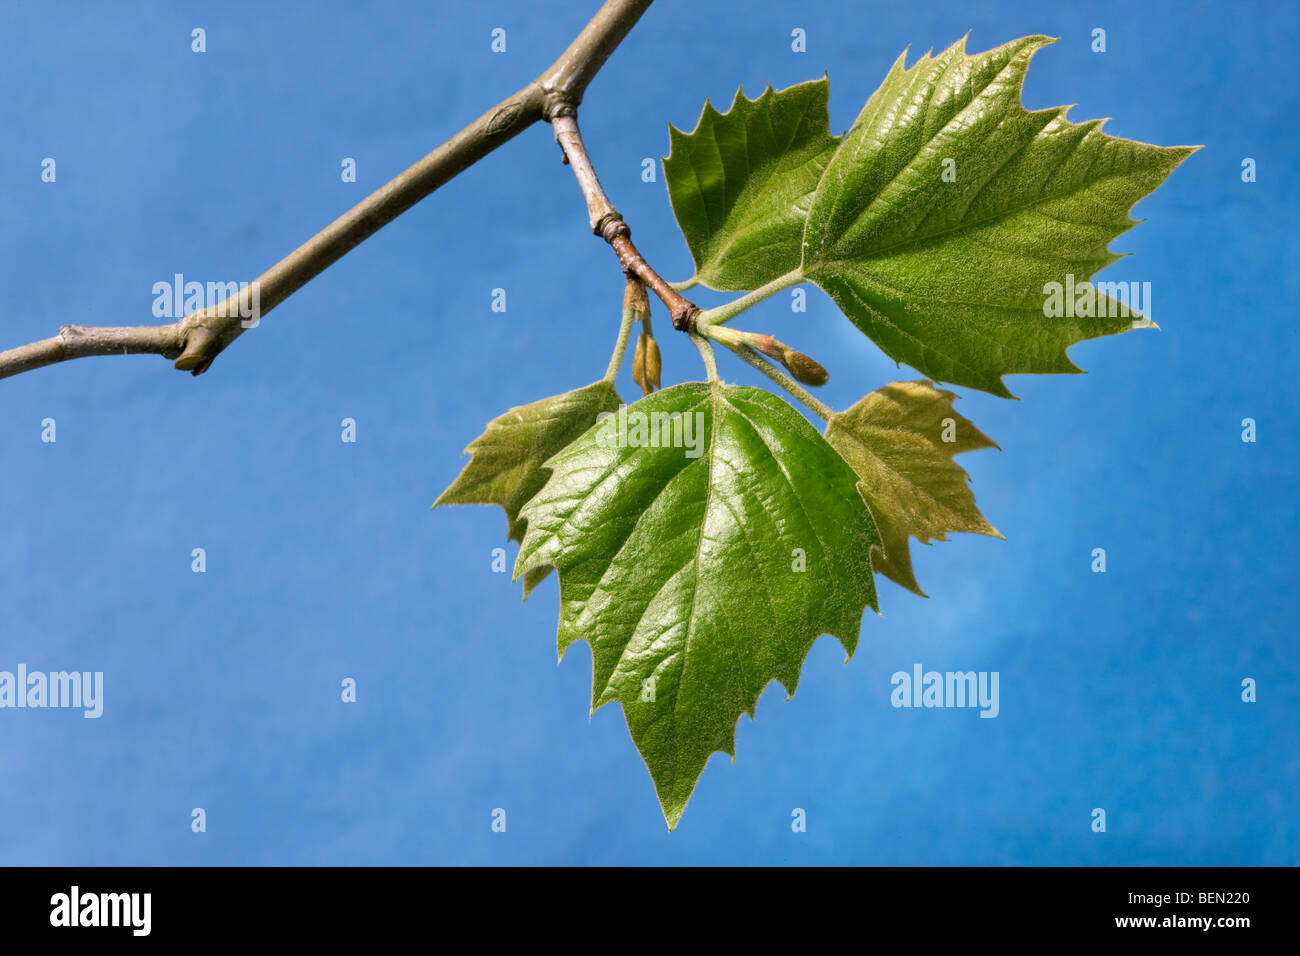 Les feuilles de platane (Platanus sp.) contre le ciel bleu, Belgique Banque D'Images